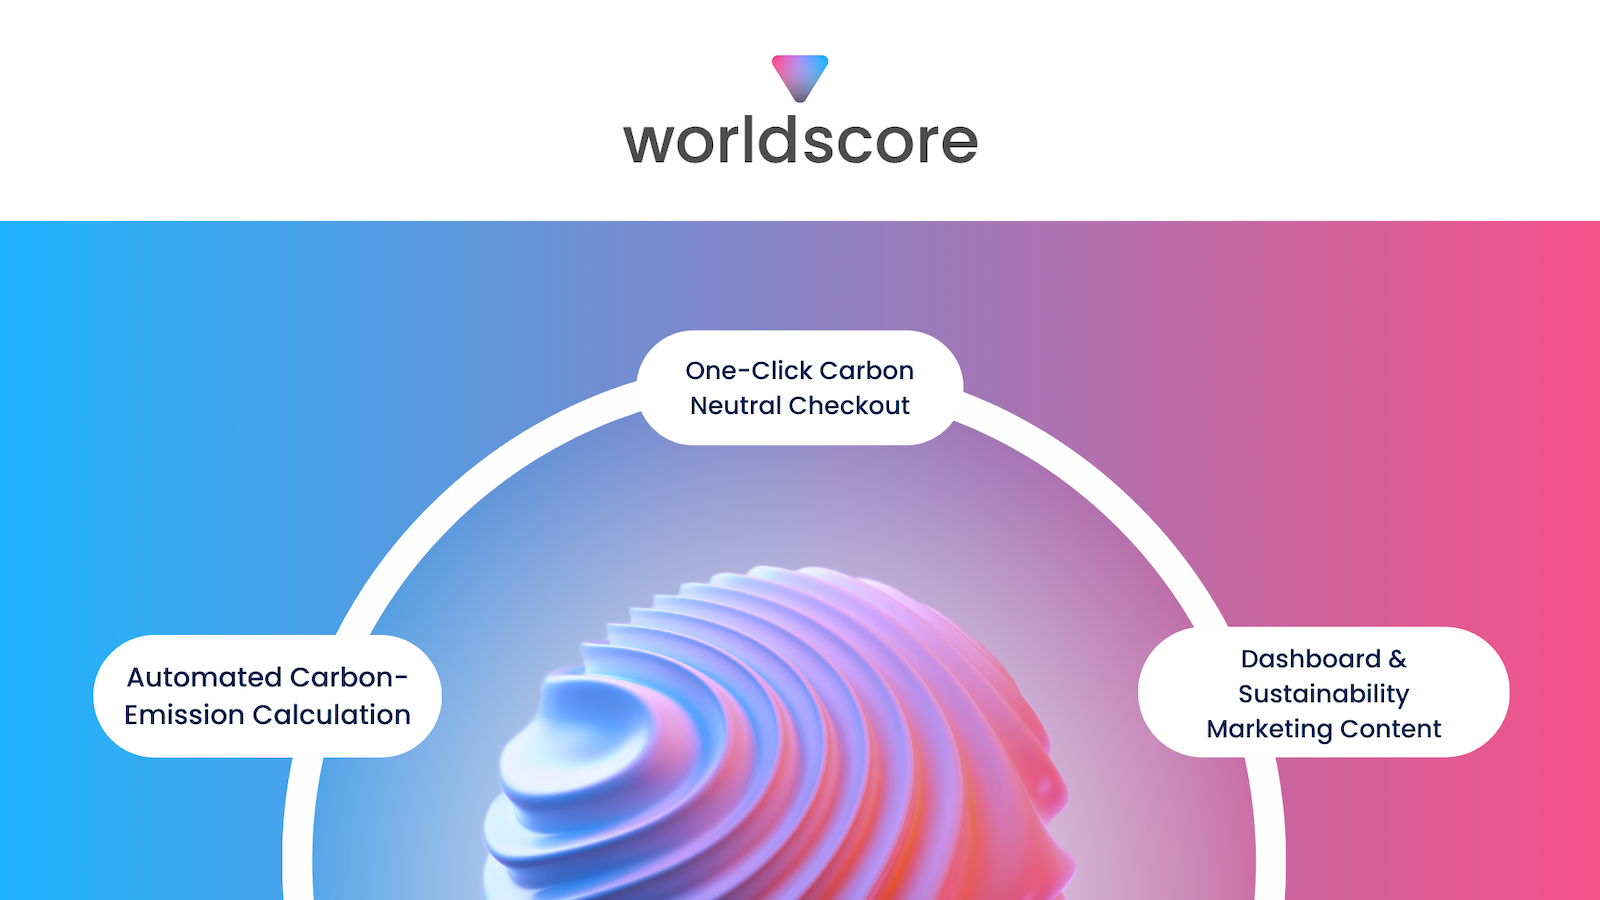 worldscore-logotypen ovanpå en vågig sfär som beskriver funktionerna